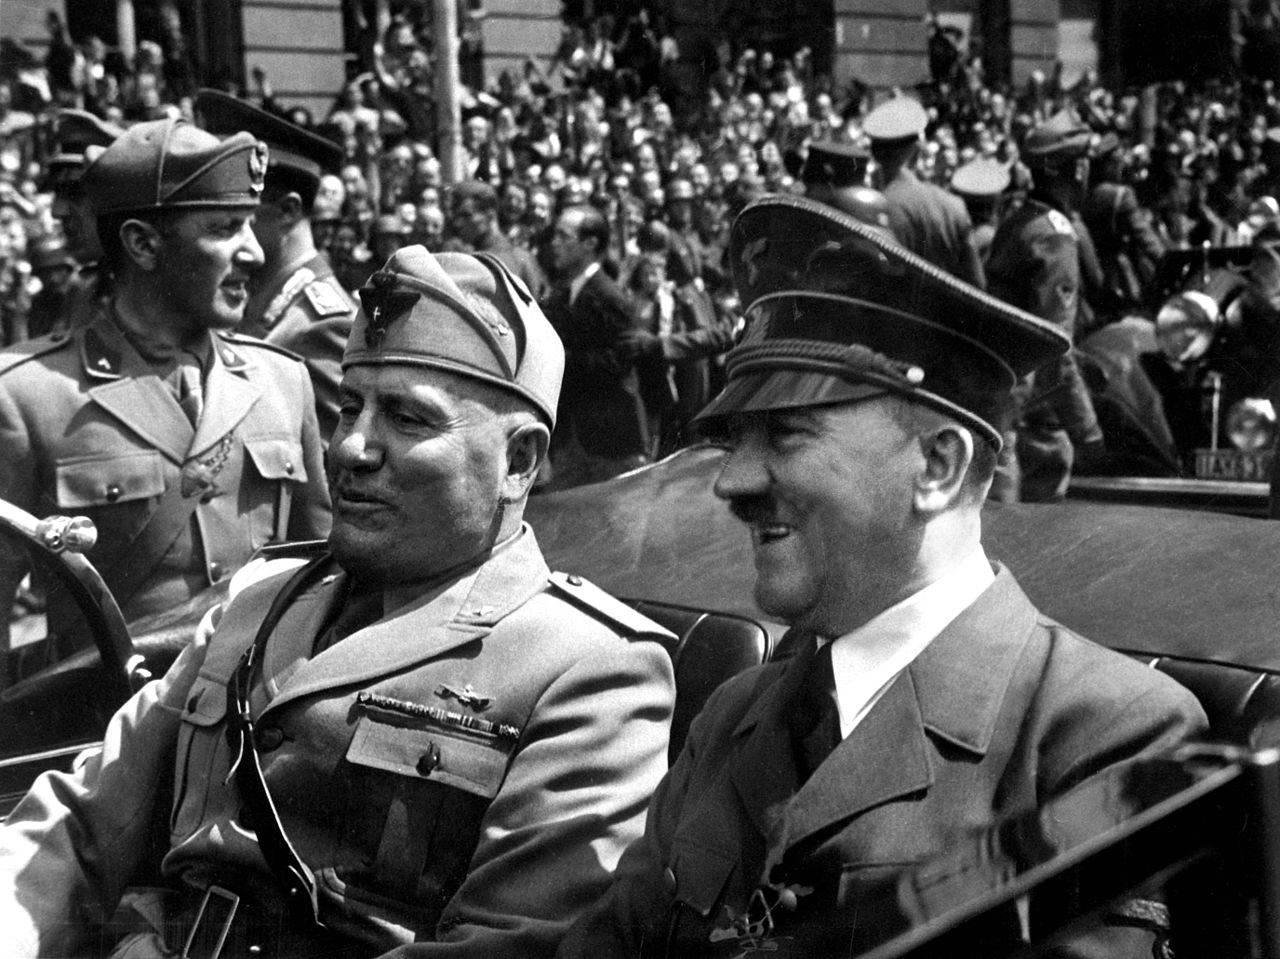 Γκρεμίζουν το σπίτι του Χίτλερ επειδή ενθαρρύνει τους ναζιστές!